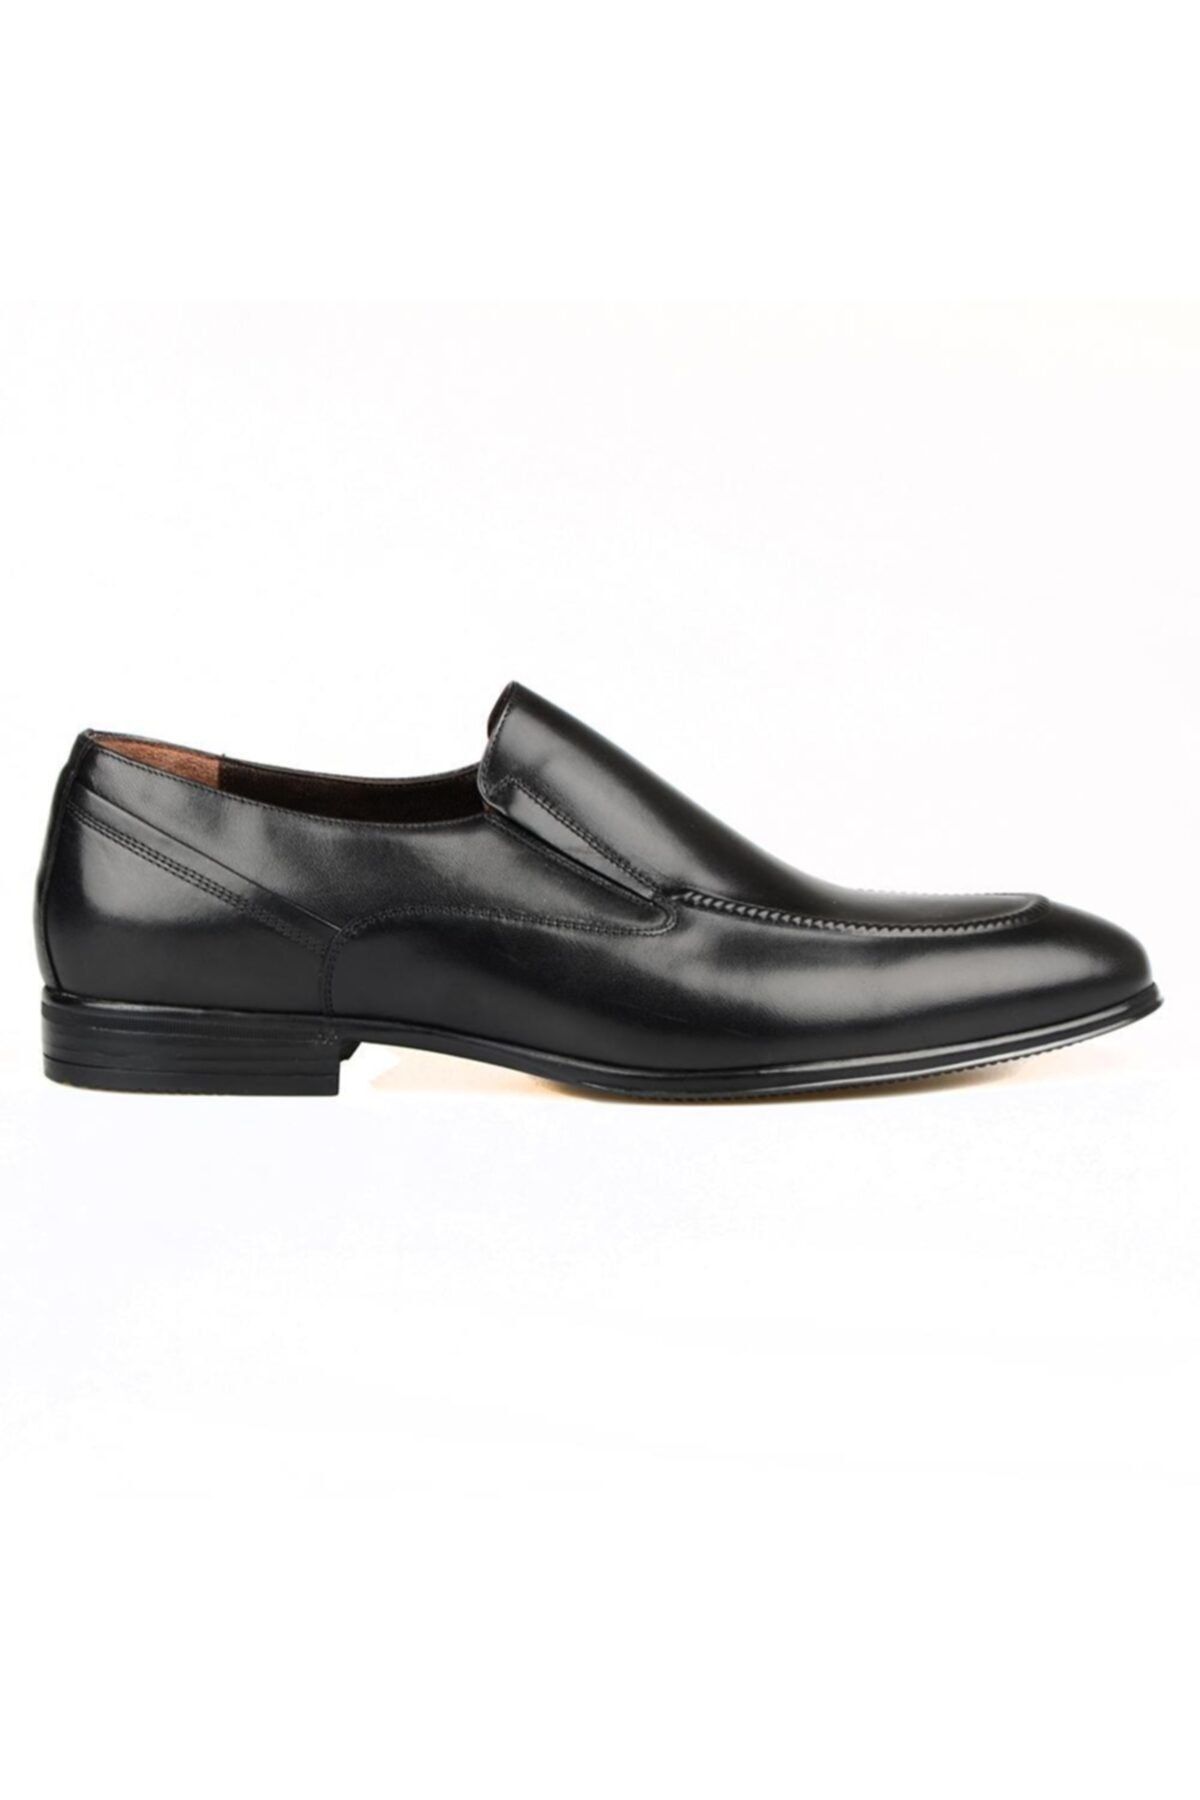 FootCourt Bağcıksız Kaymaz Taban Klasik Erkek Ayakkabı Siyah Deri